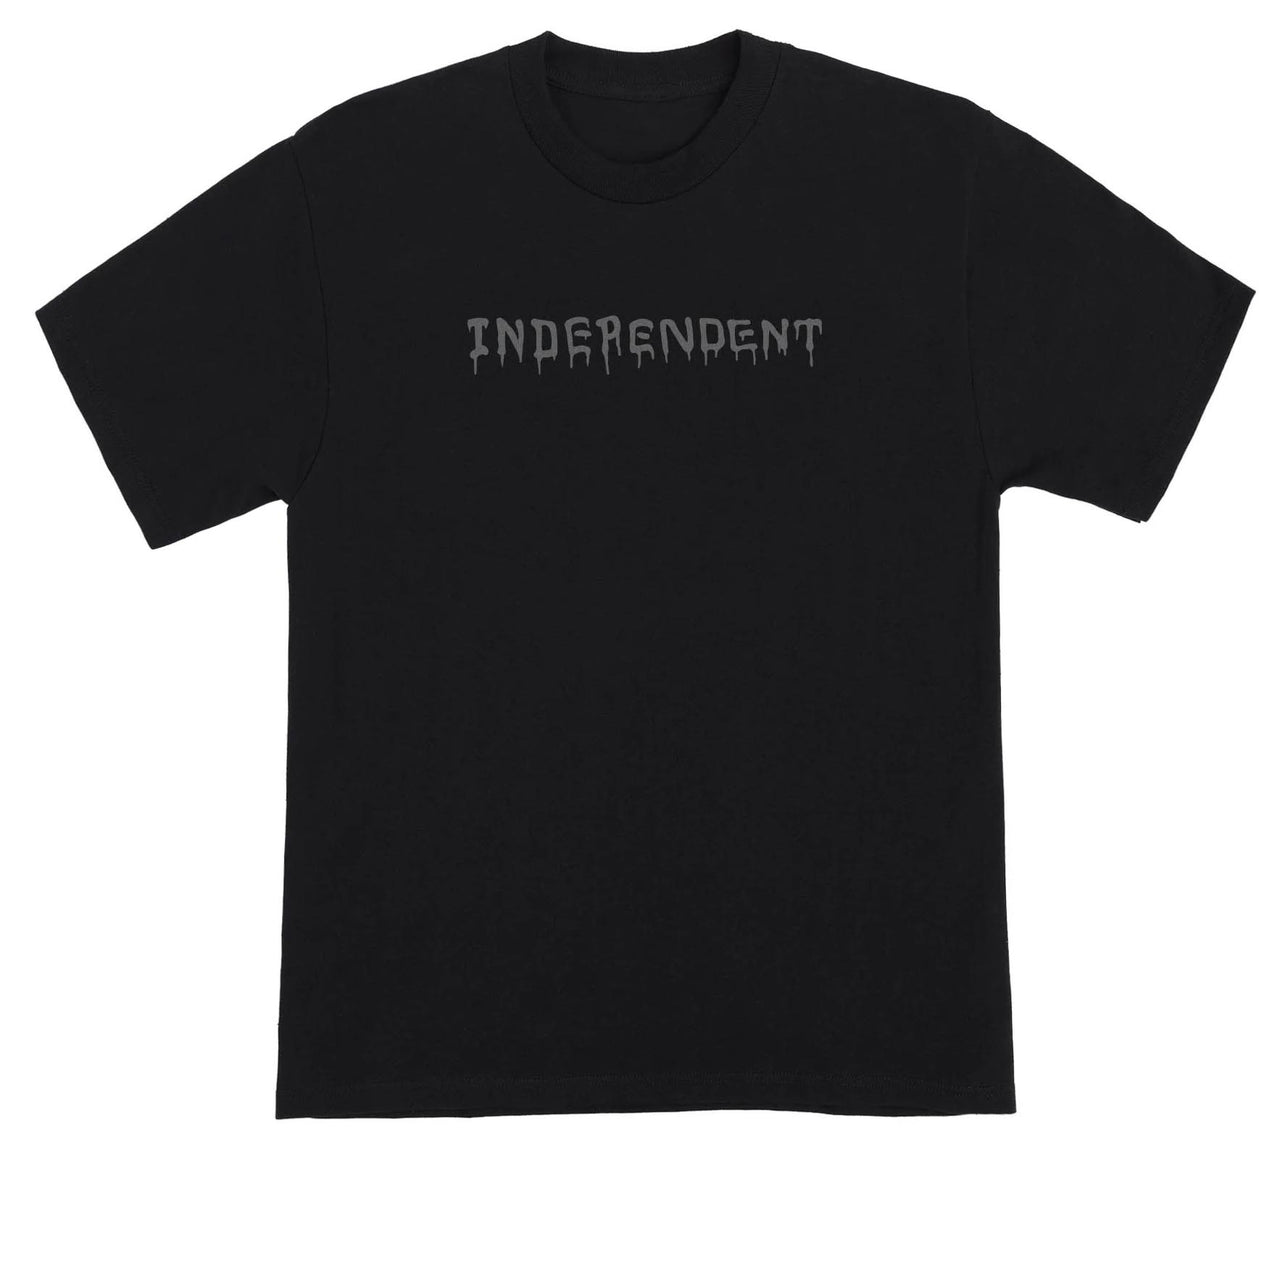 Independent Vandal T-Shirt - Black image 1